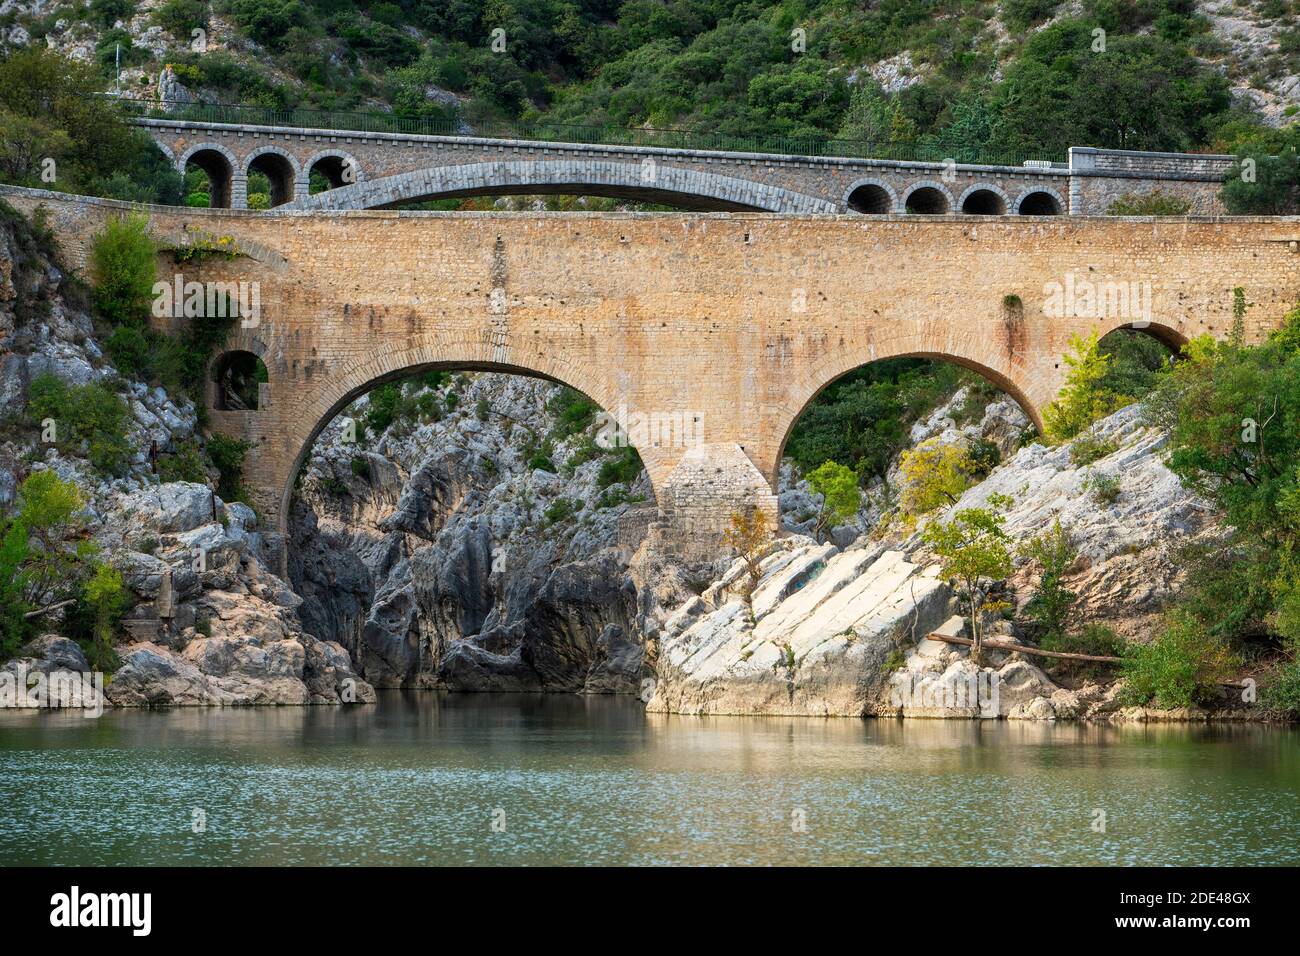 Pont du Diable, die Teufelsbrücke, über den Fluss Hérault, in der Nähe von Saint Guilhem le Désert, Hérault, Languedoc Roussillon. Saint Jean de Fos, die Pont du Di Stockfoto